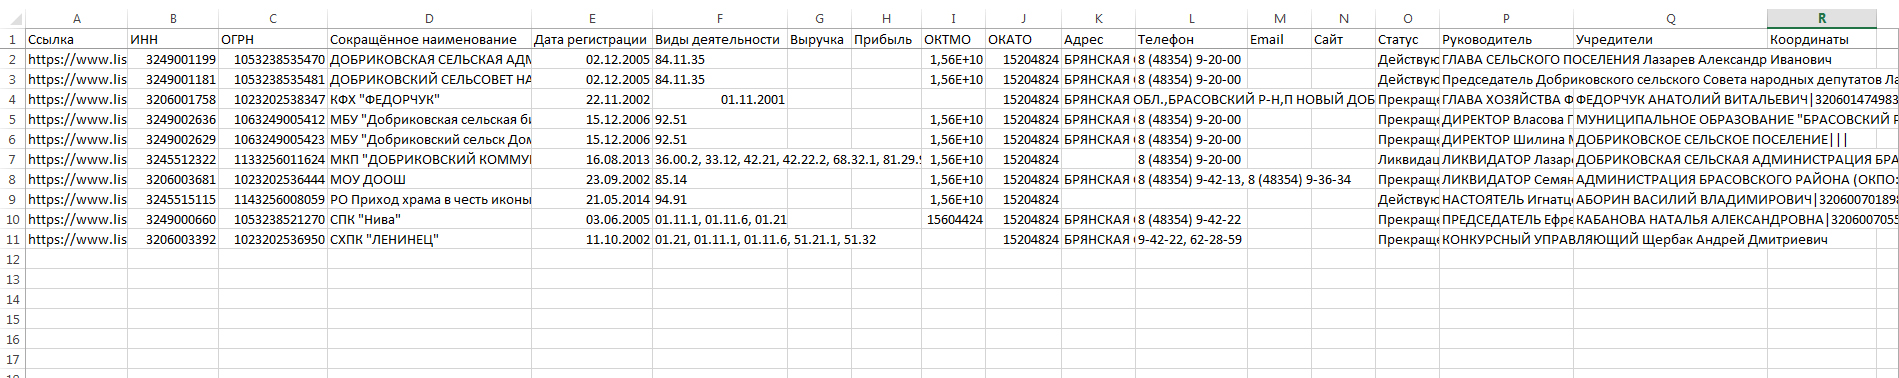 Файл Excel с контактными данными организаций с List-org.com